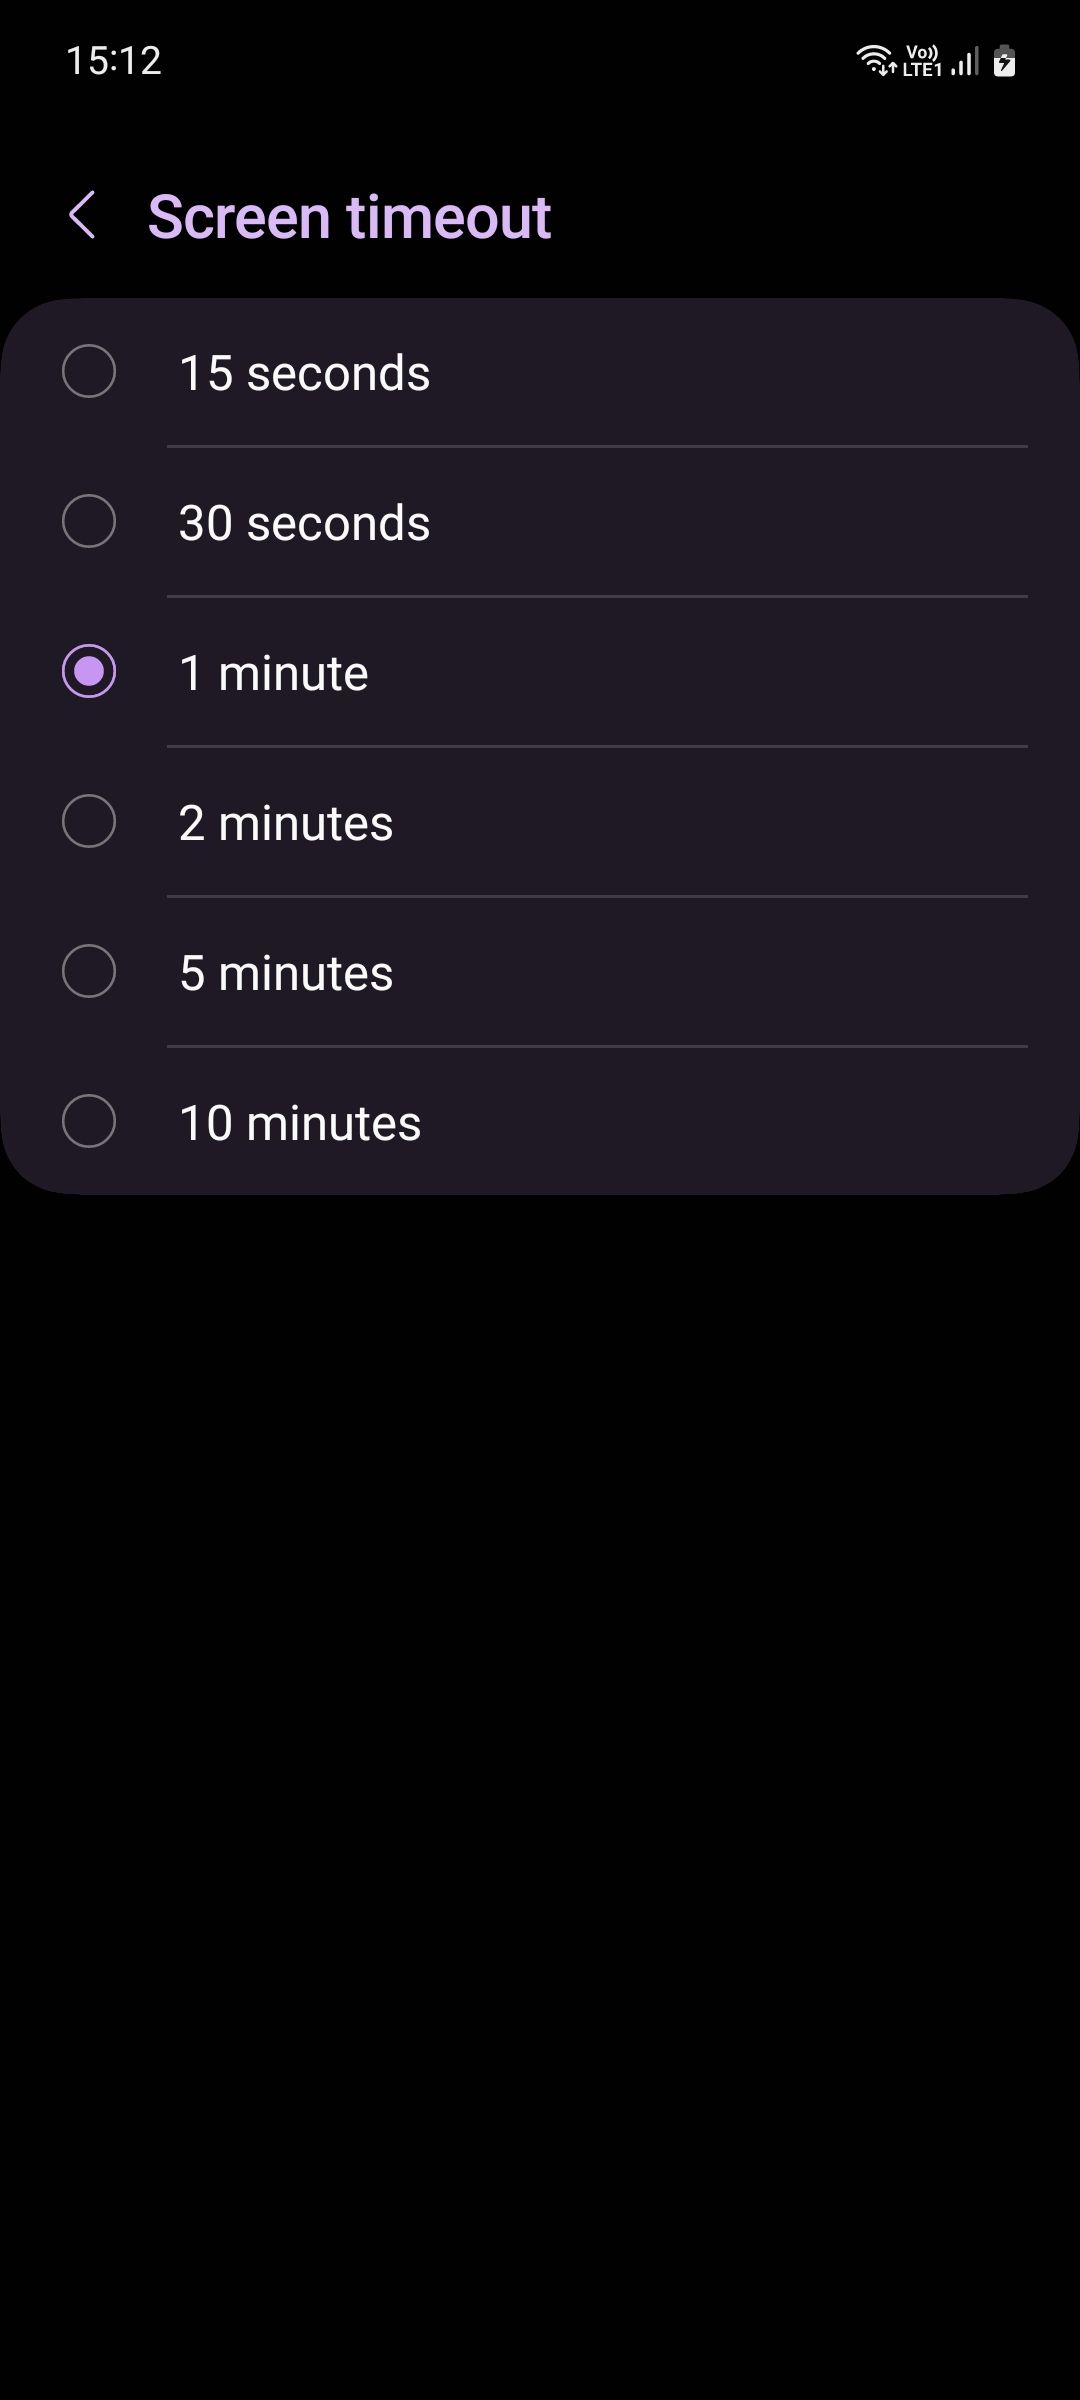 Samsung One UI Screen timeout menu